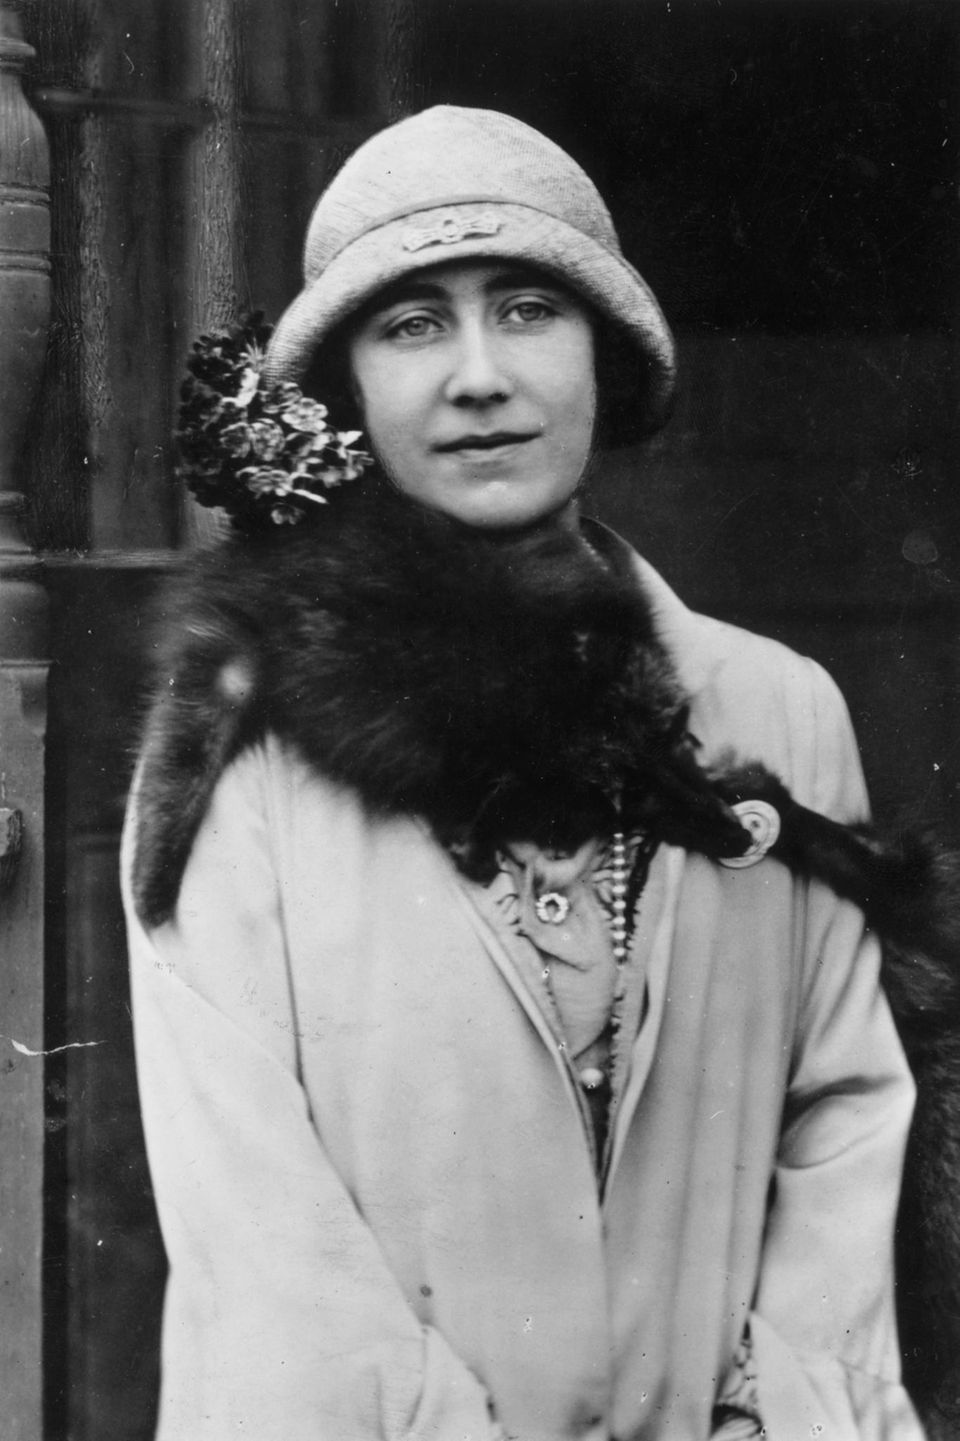 Queen Mum (1900 - 2002) ist auf Bildern aus dem Jahr 1929 mit der Brosche zu sehen, die jetzt am Mantel von Prinzessin Charlotte steckt. 